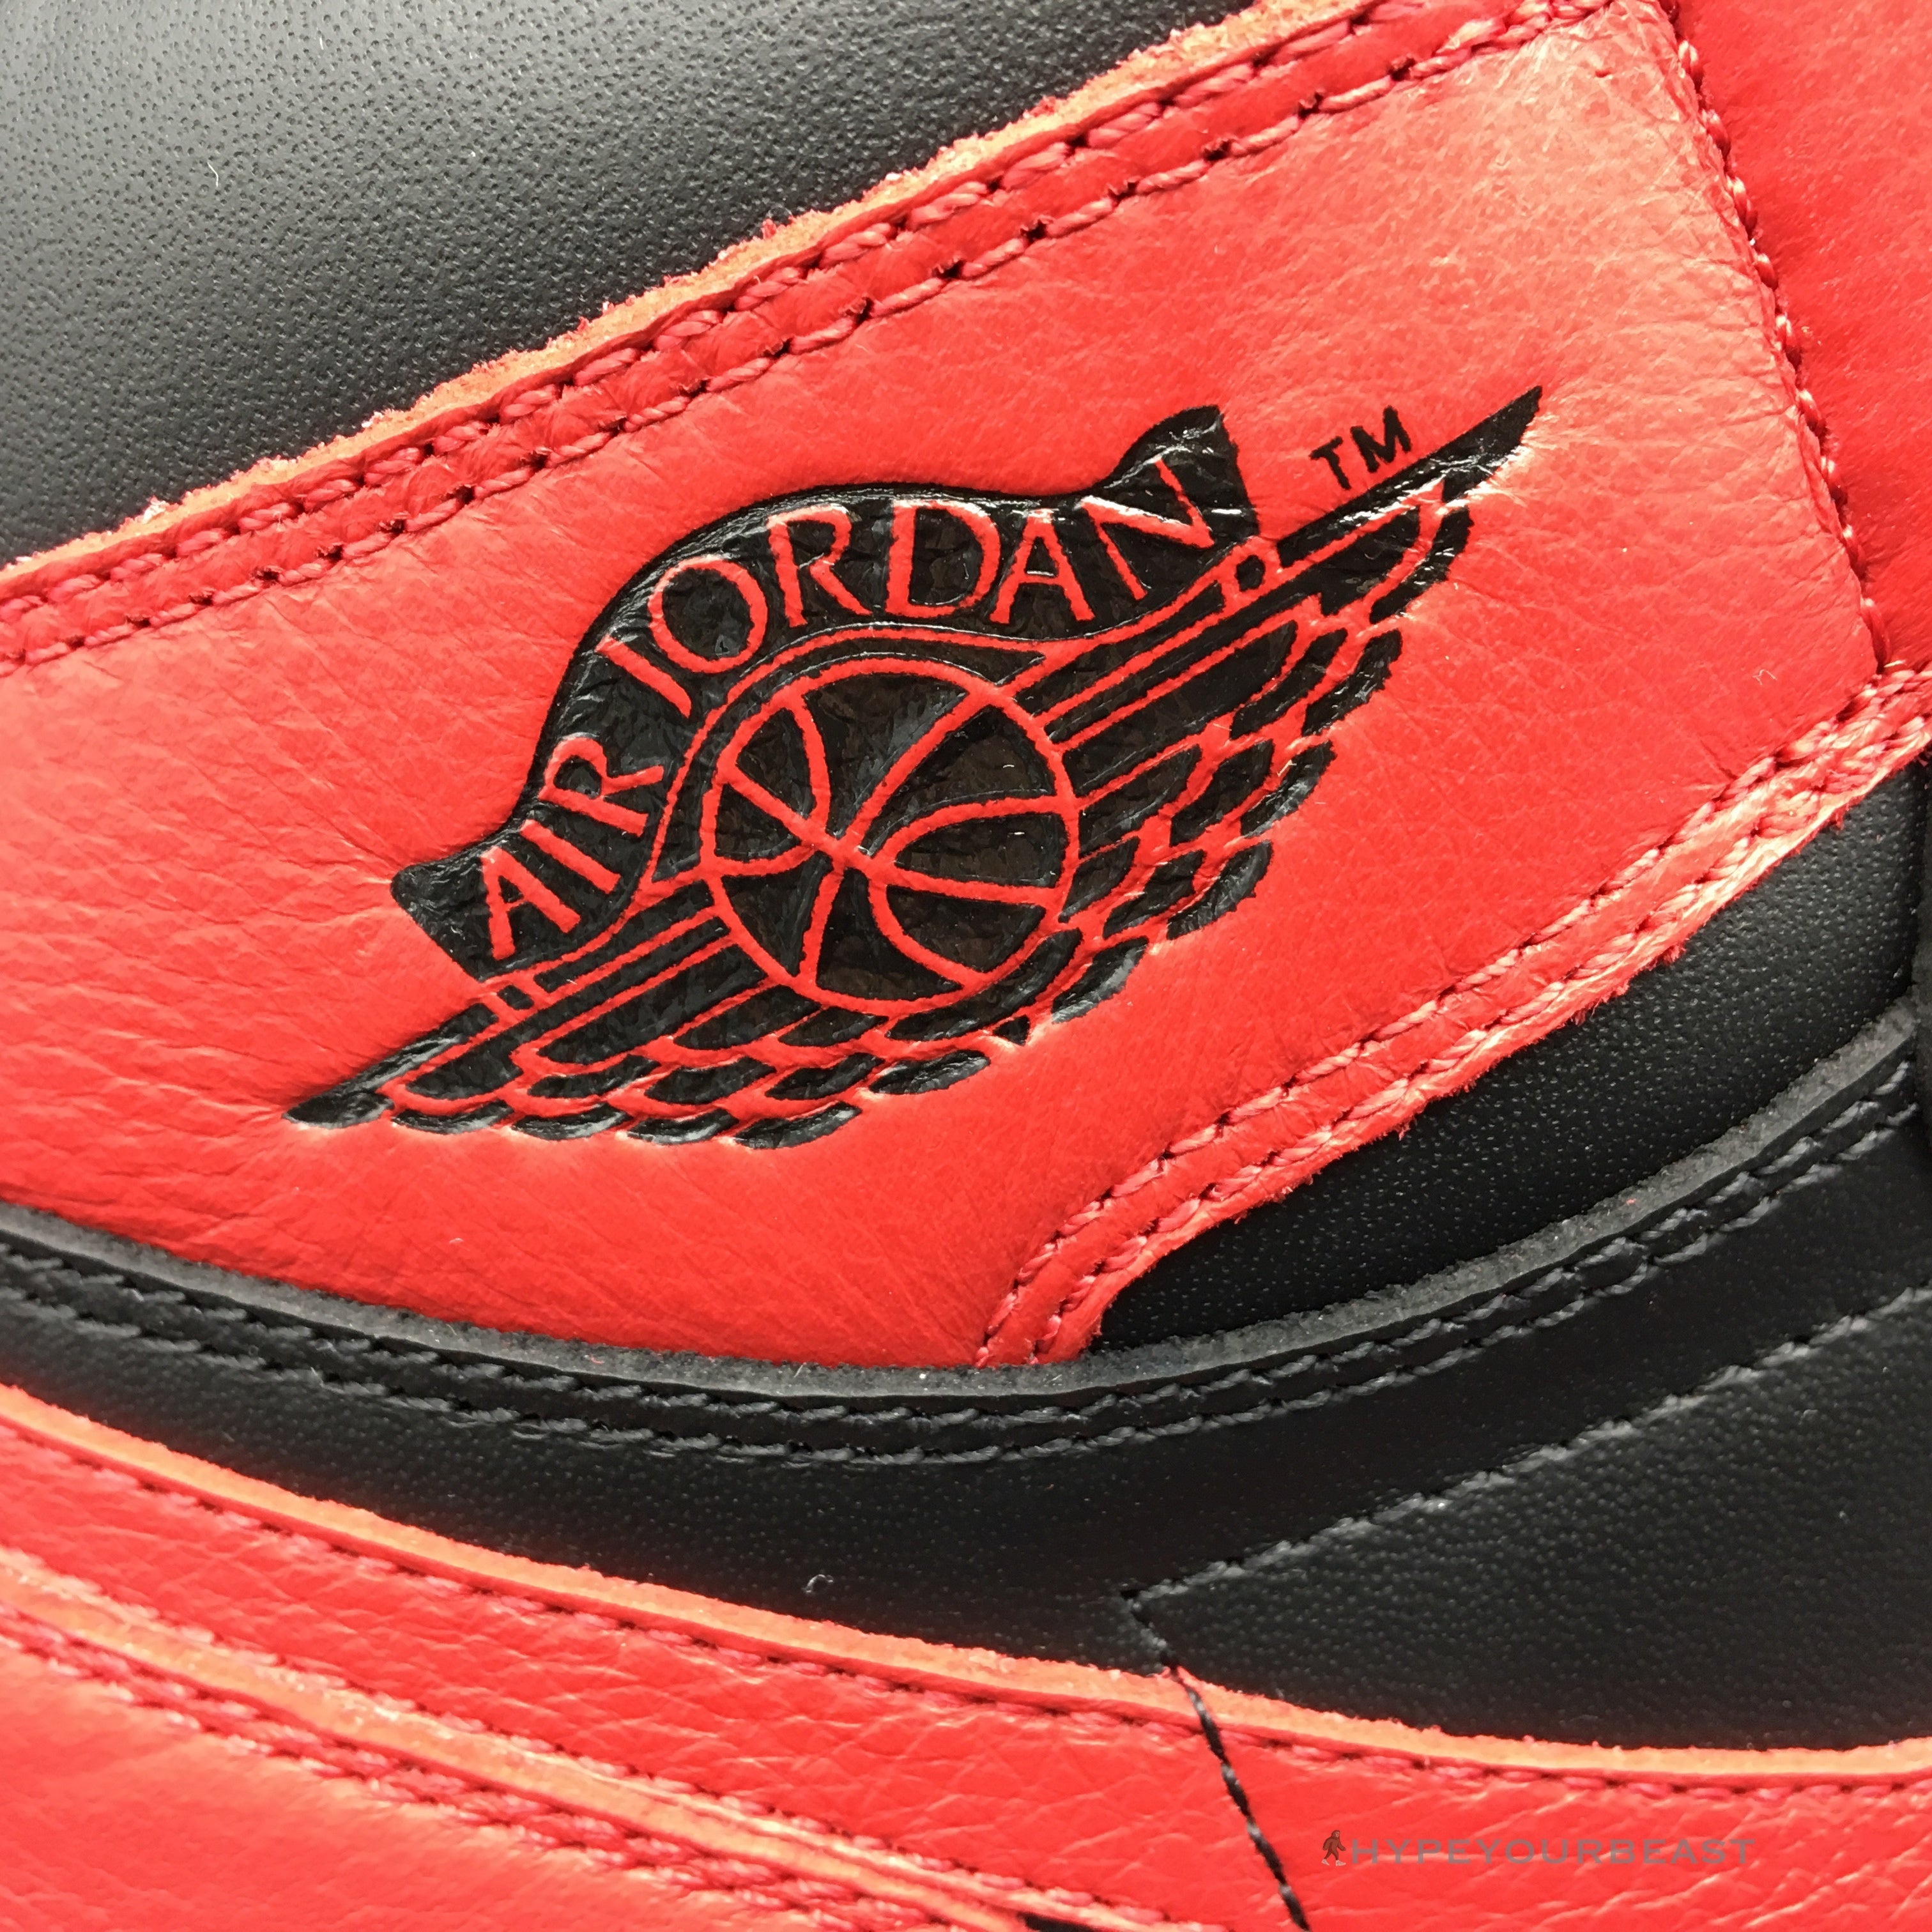 Air Jordan 1 High 'Satin' Banned